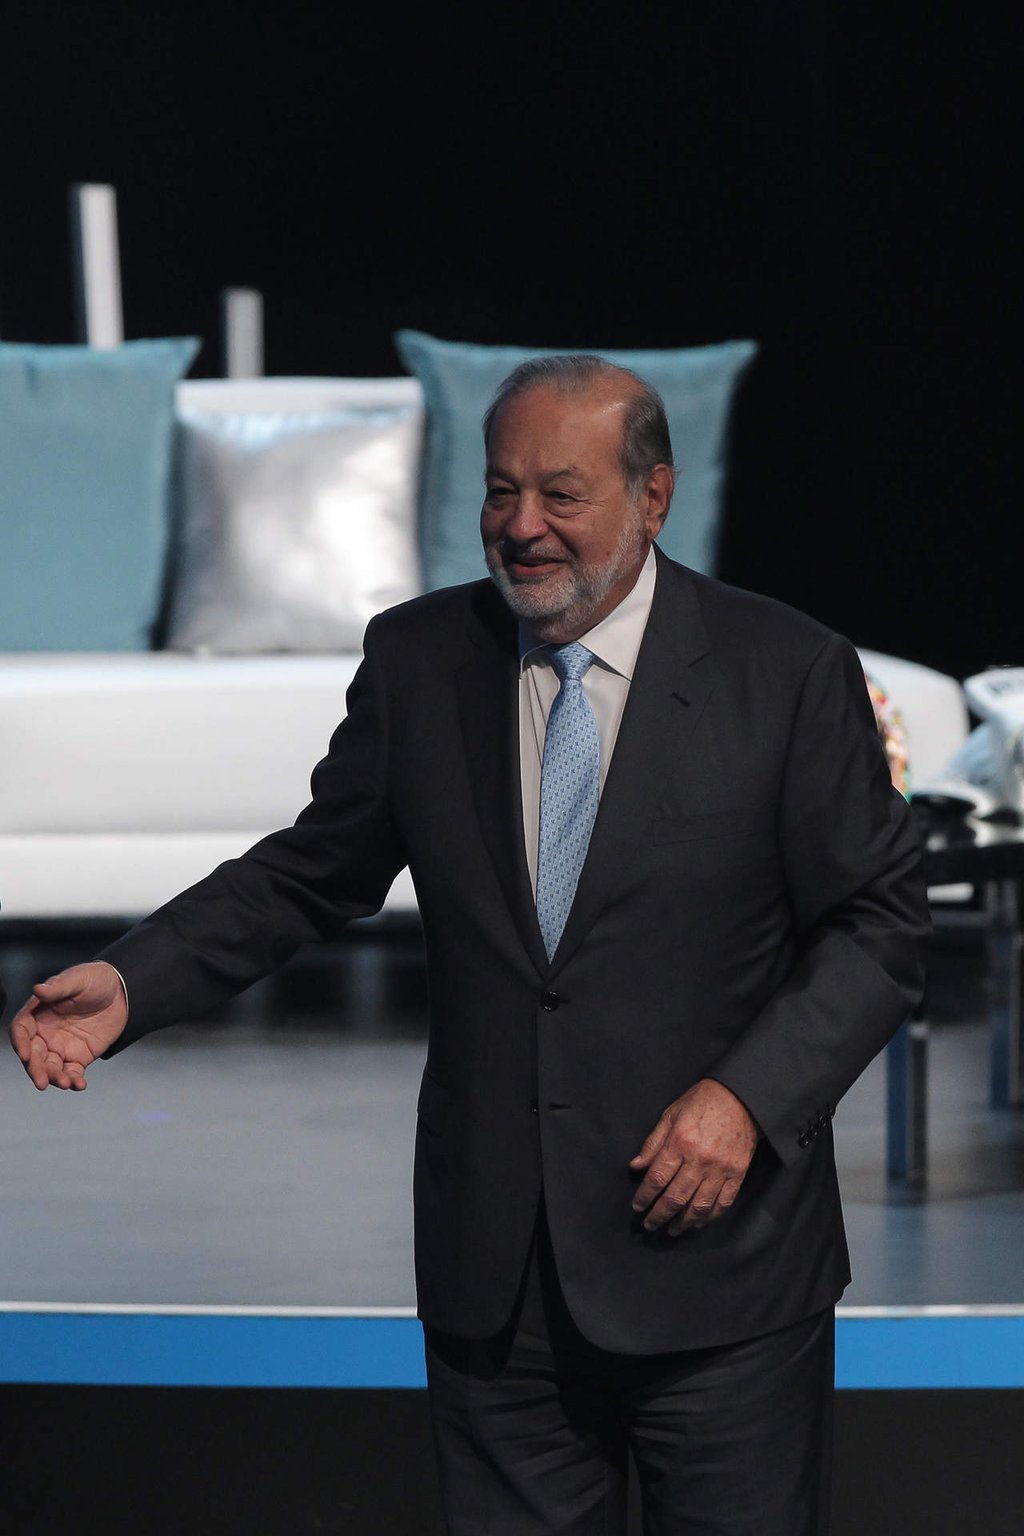 Postulan en redes sociales a Carlos Slim para presidente de México en 2018